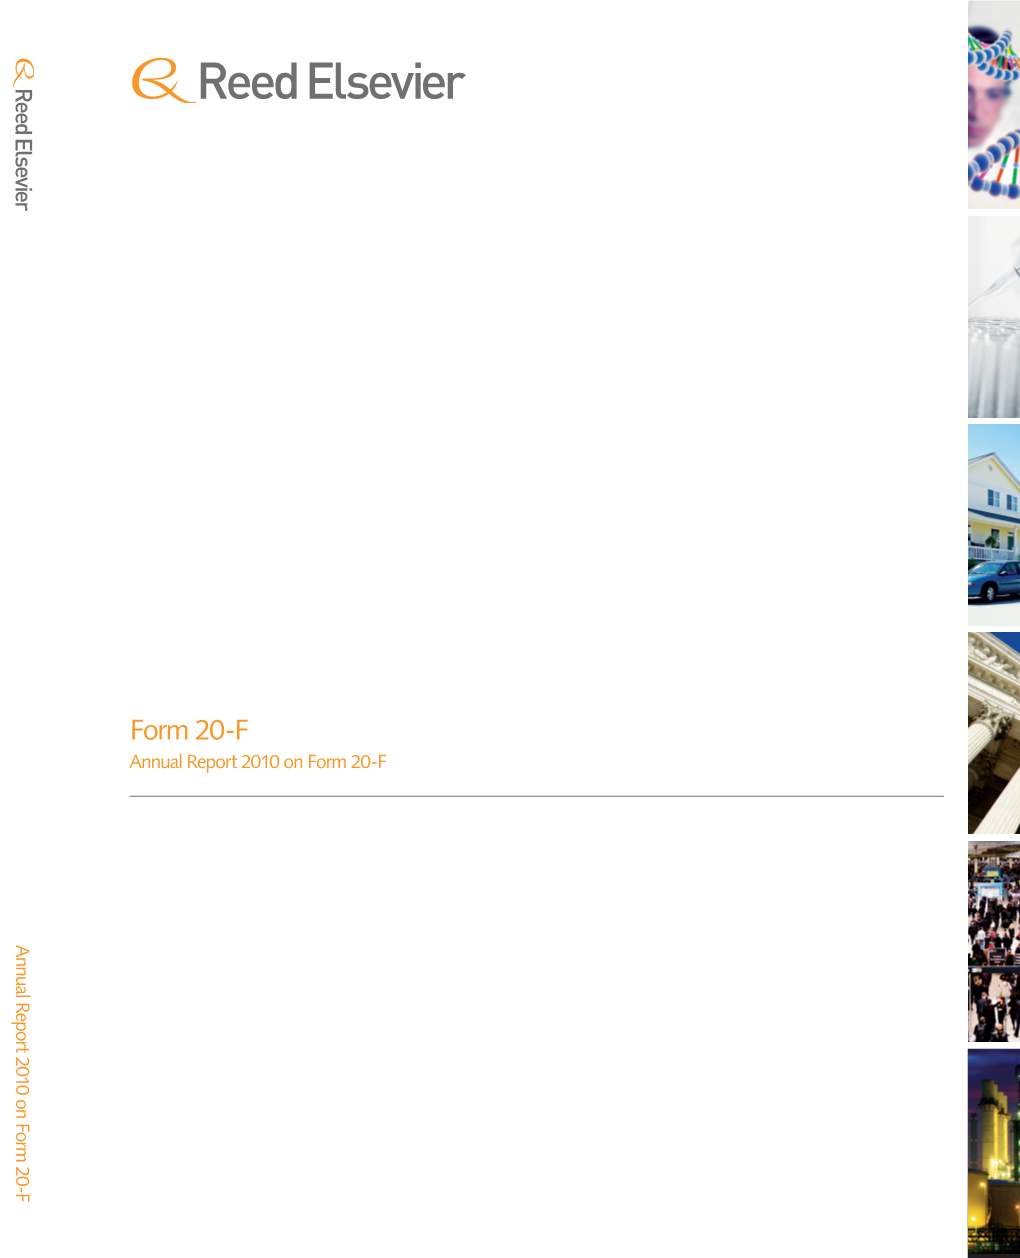 Form 20-F Annual Report 2010 on Form 20-F Annual 2010 Report on Form 20-F